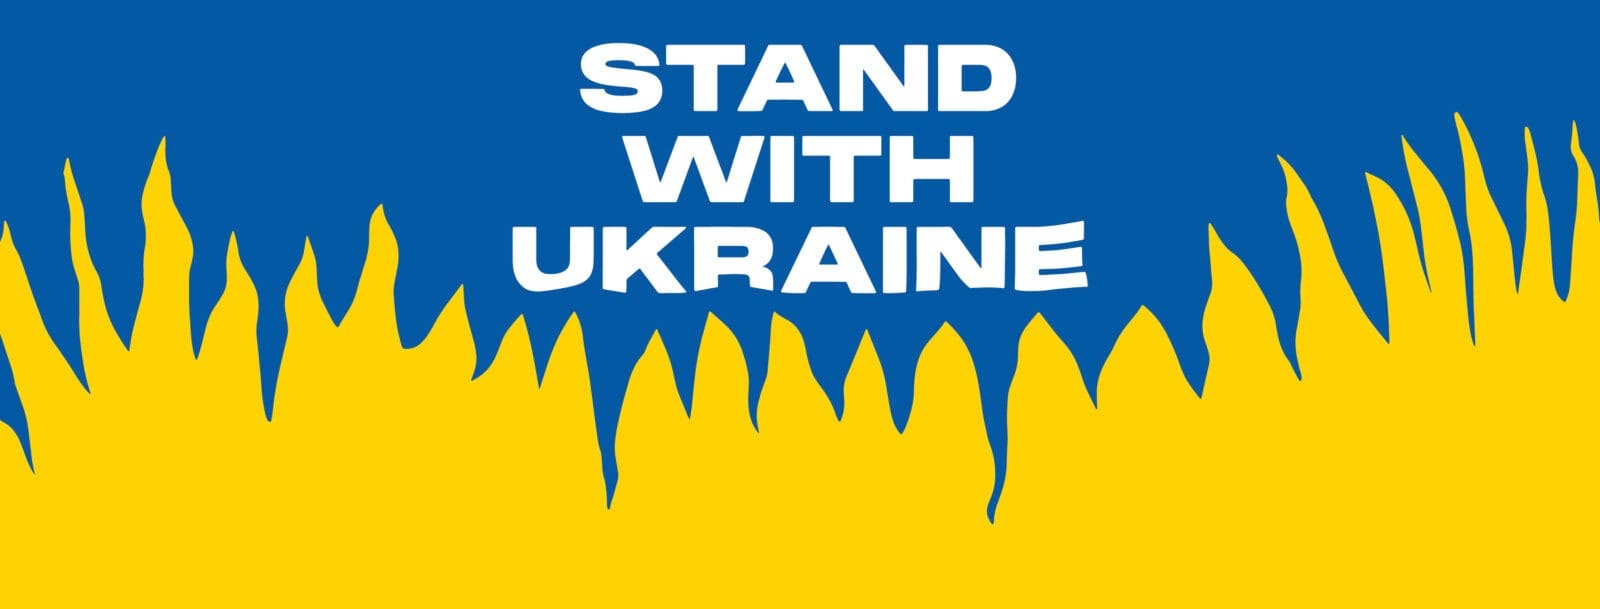 The war in Ukraine